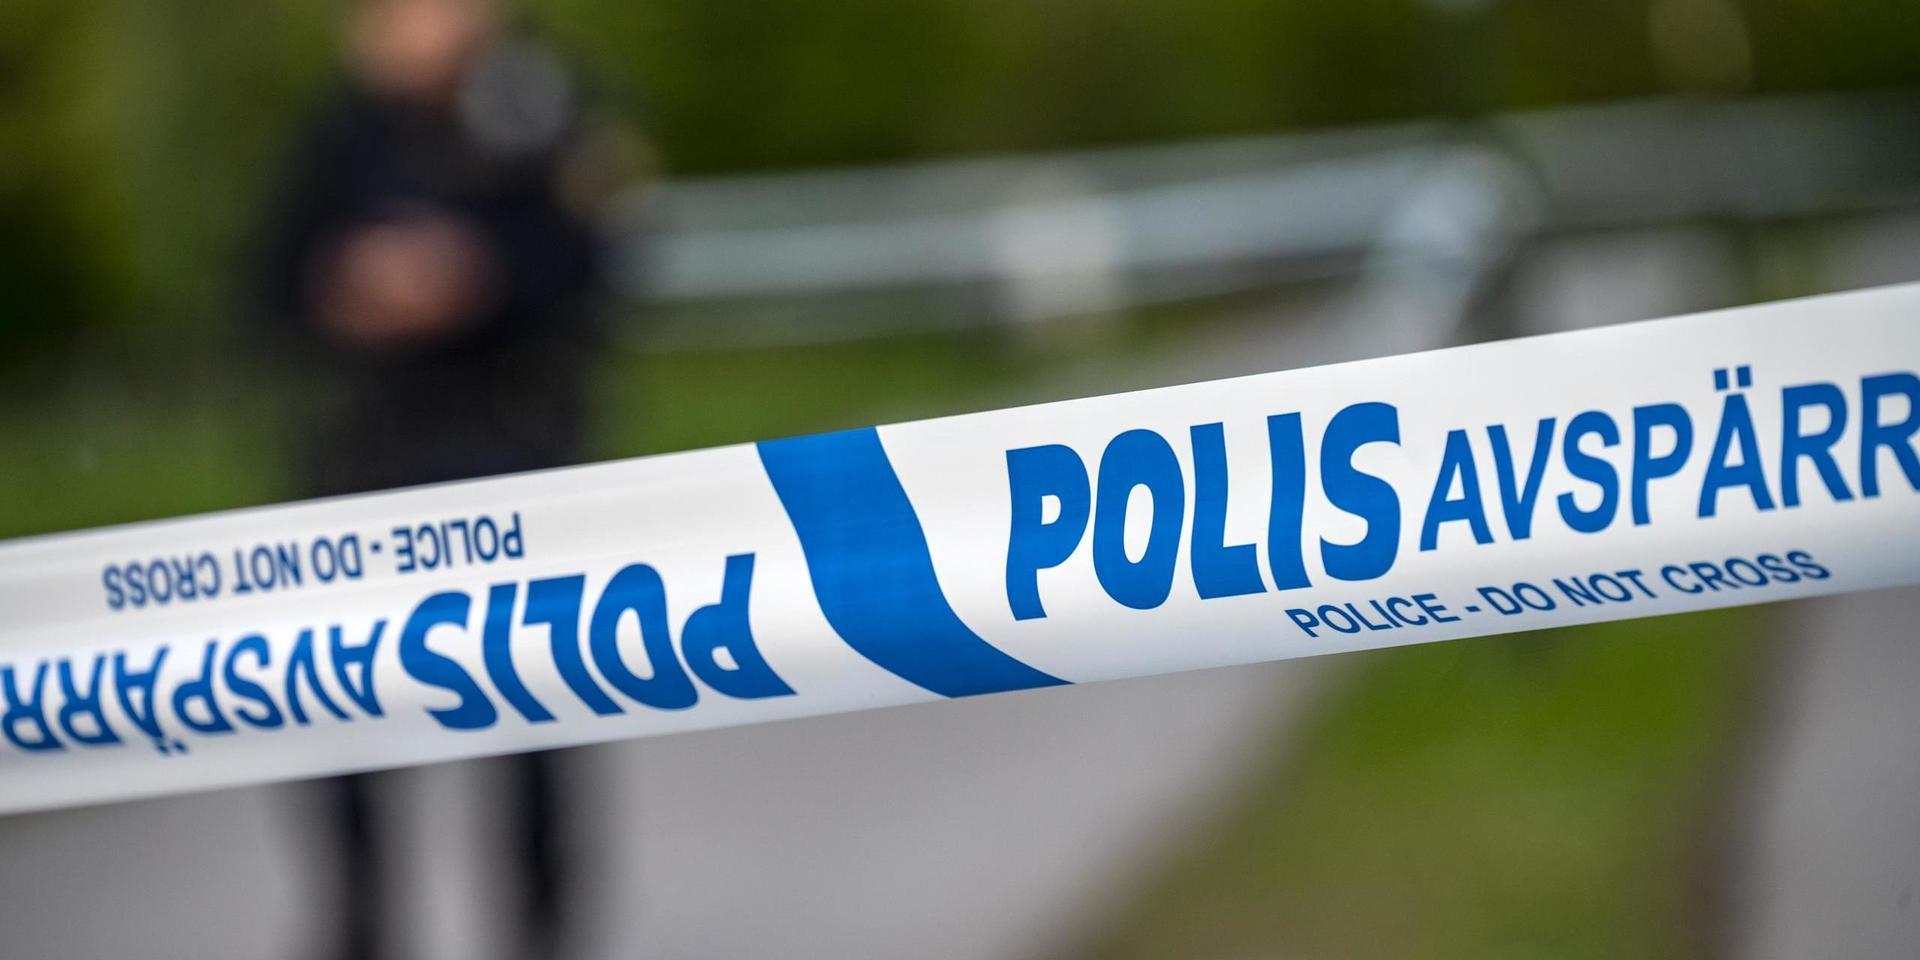 En utomhusvåldtäkt har skett i Växjö under natten. Arkivbild